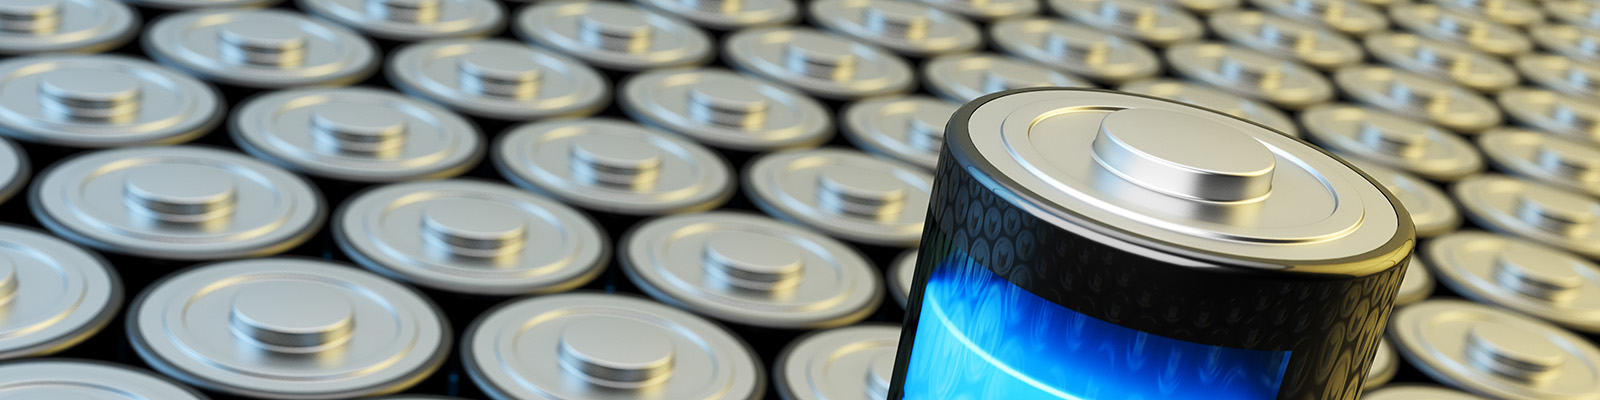 Batteriezellen zum Thema Batteriezellenfertigung